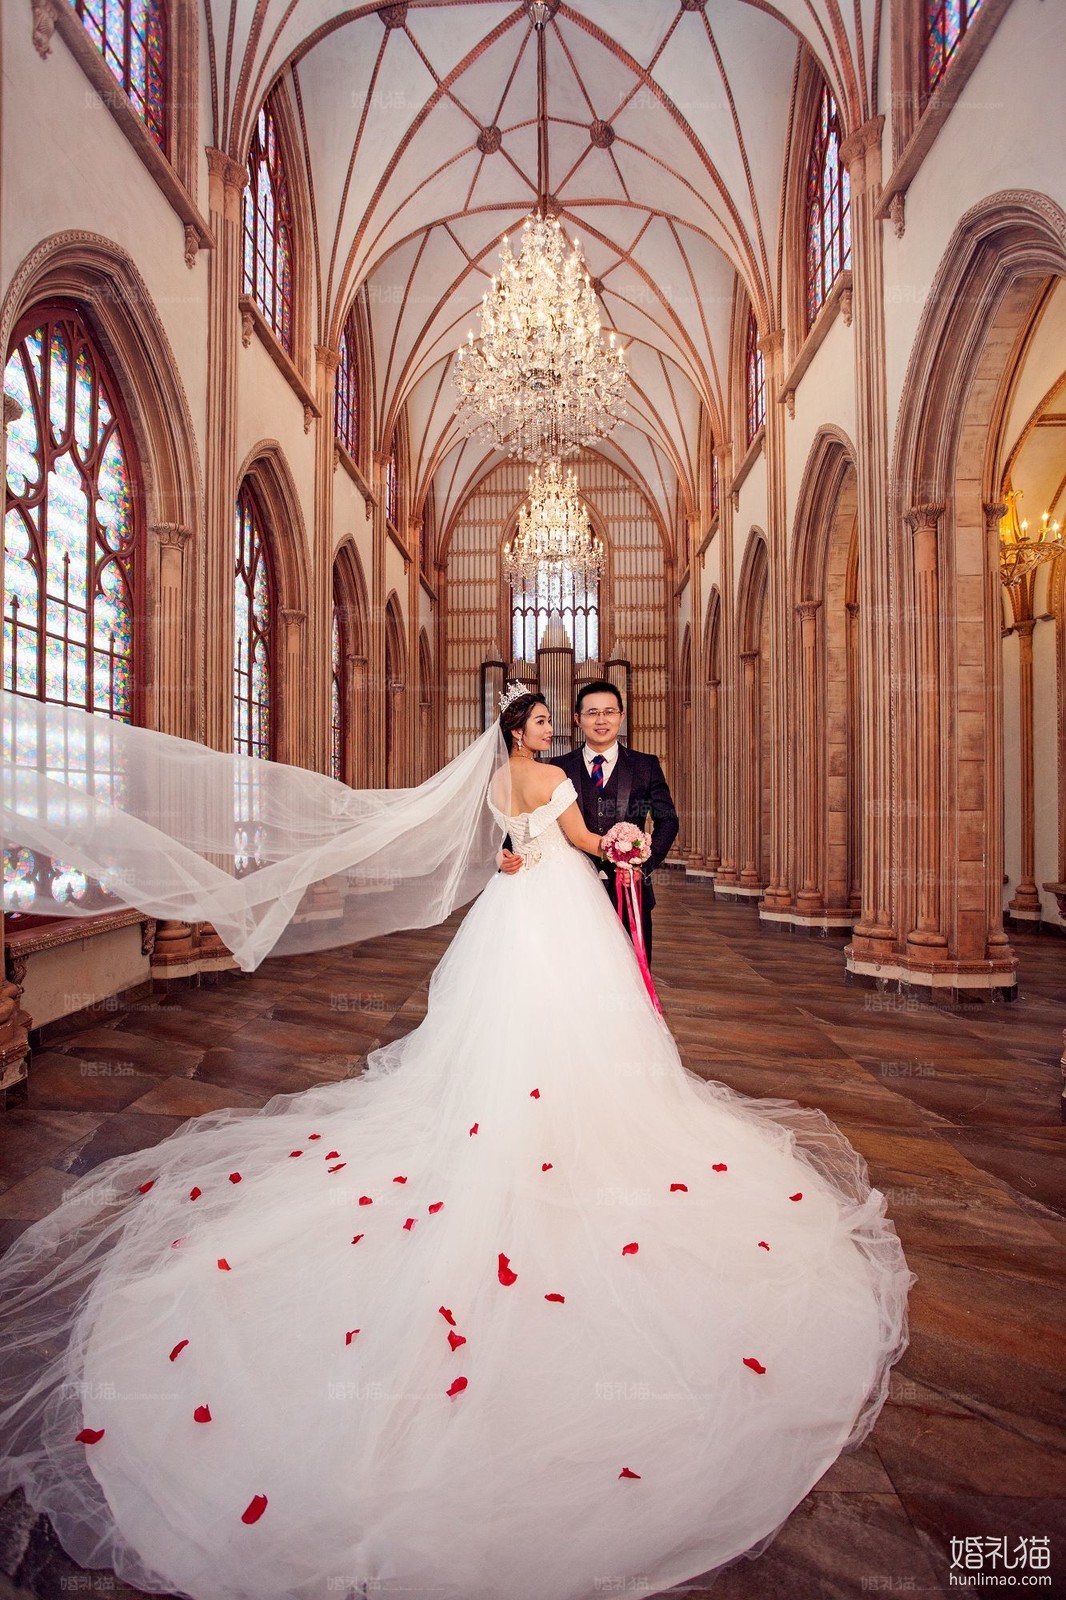 欧式结婚照|城堡婚纱照图片,[欧式, 城堡],茂名婚纱照,婚纱照图片